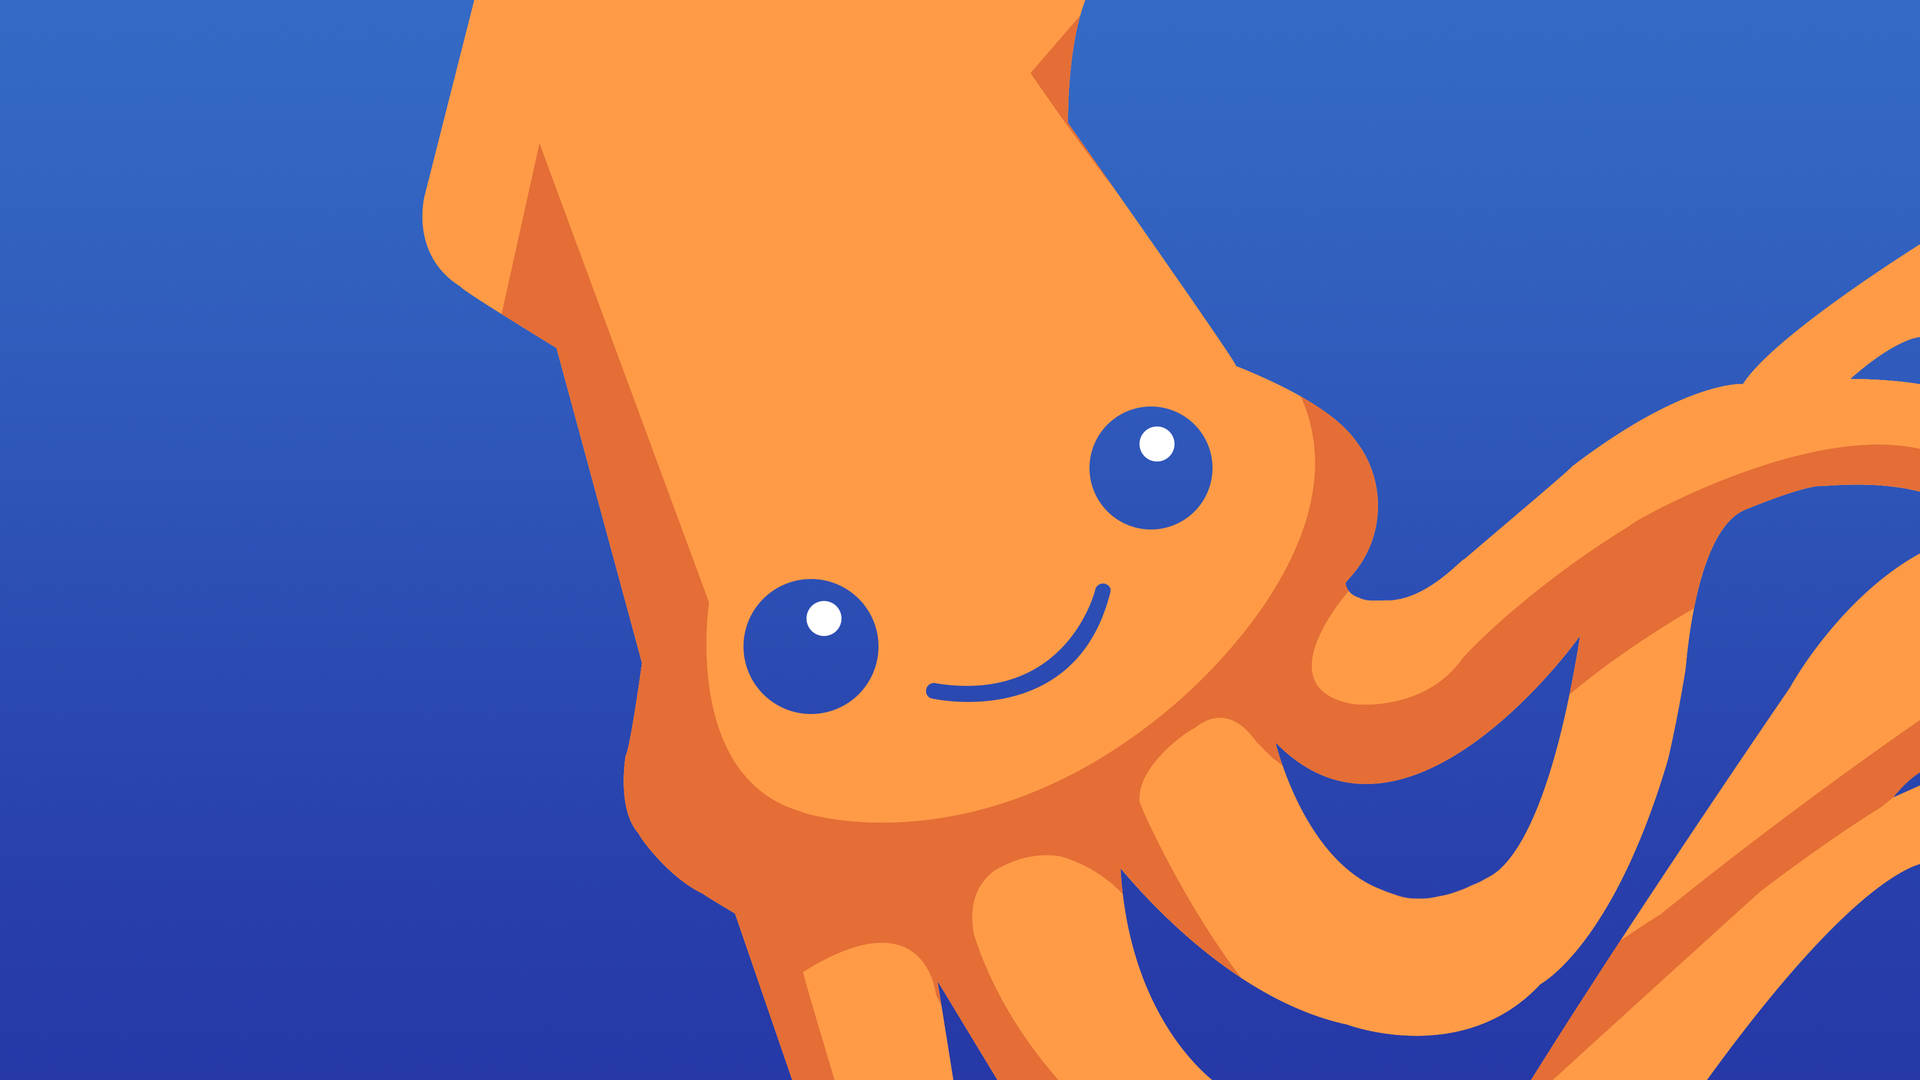 Cute Orange Calamari Vector Art Picture